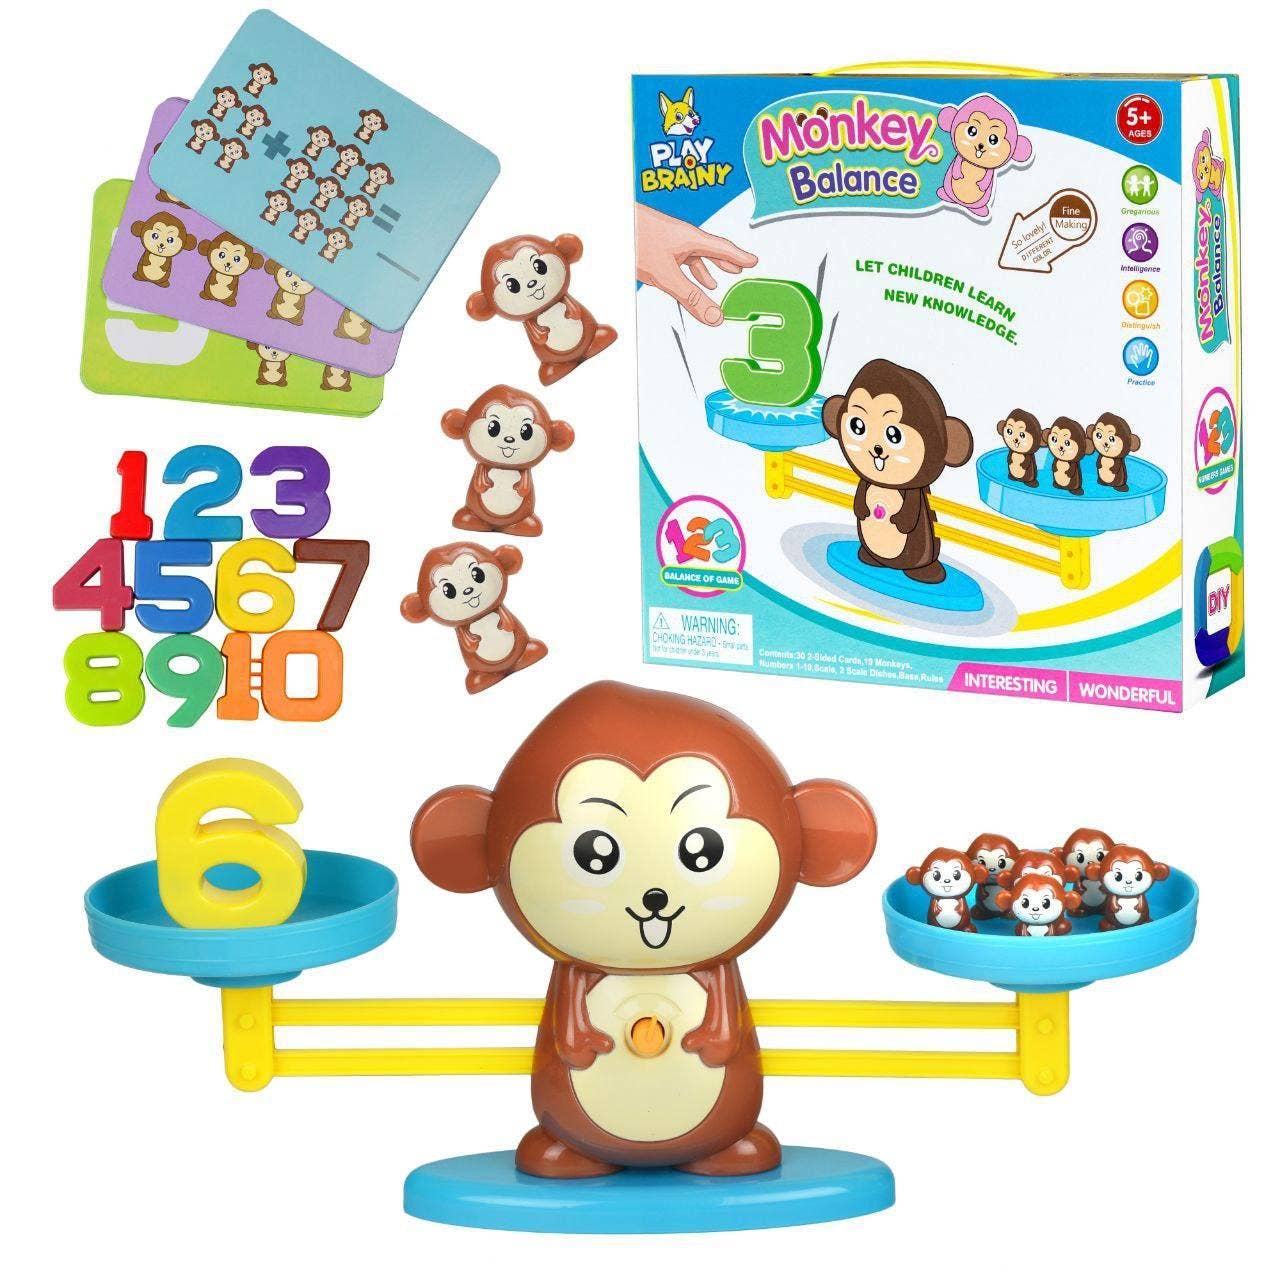 Monkey Balance toy